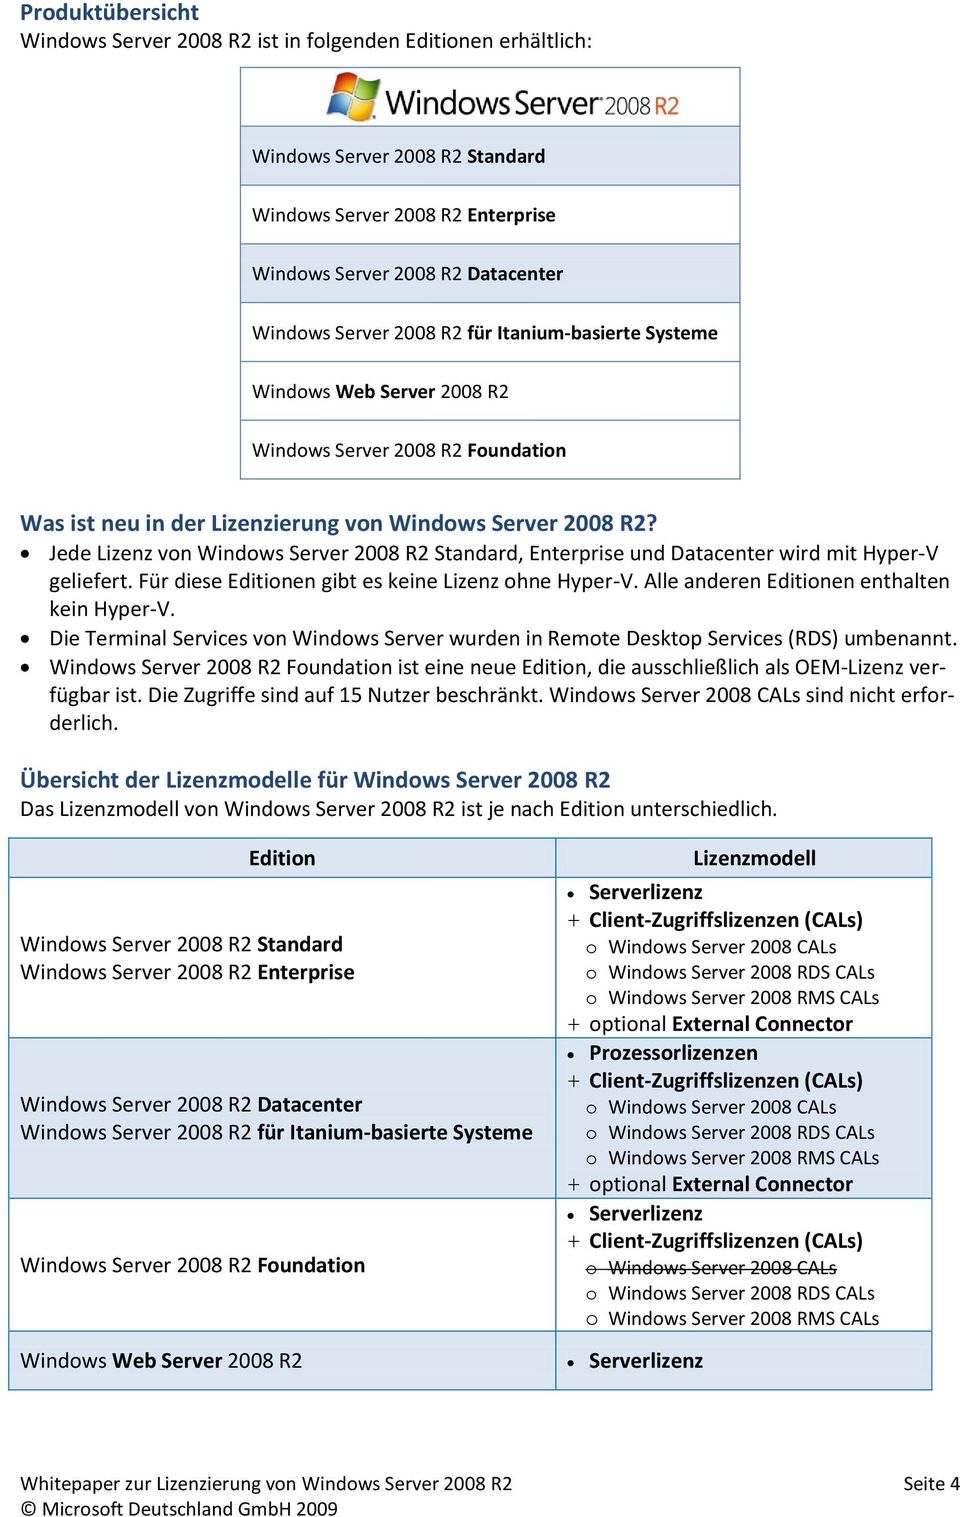 Jede Lizenz von Windows Server 2008 R2 Standard, Enterprise und Datacenter wird mit Hyper-V geliefert. Für diese Editionen gibt es keine Lizenz ohne Hyper-V.